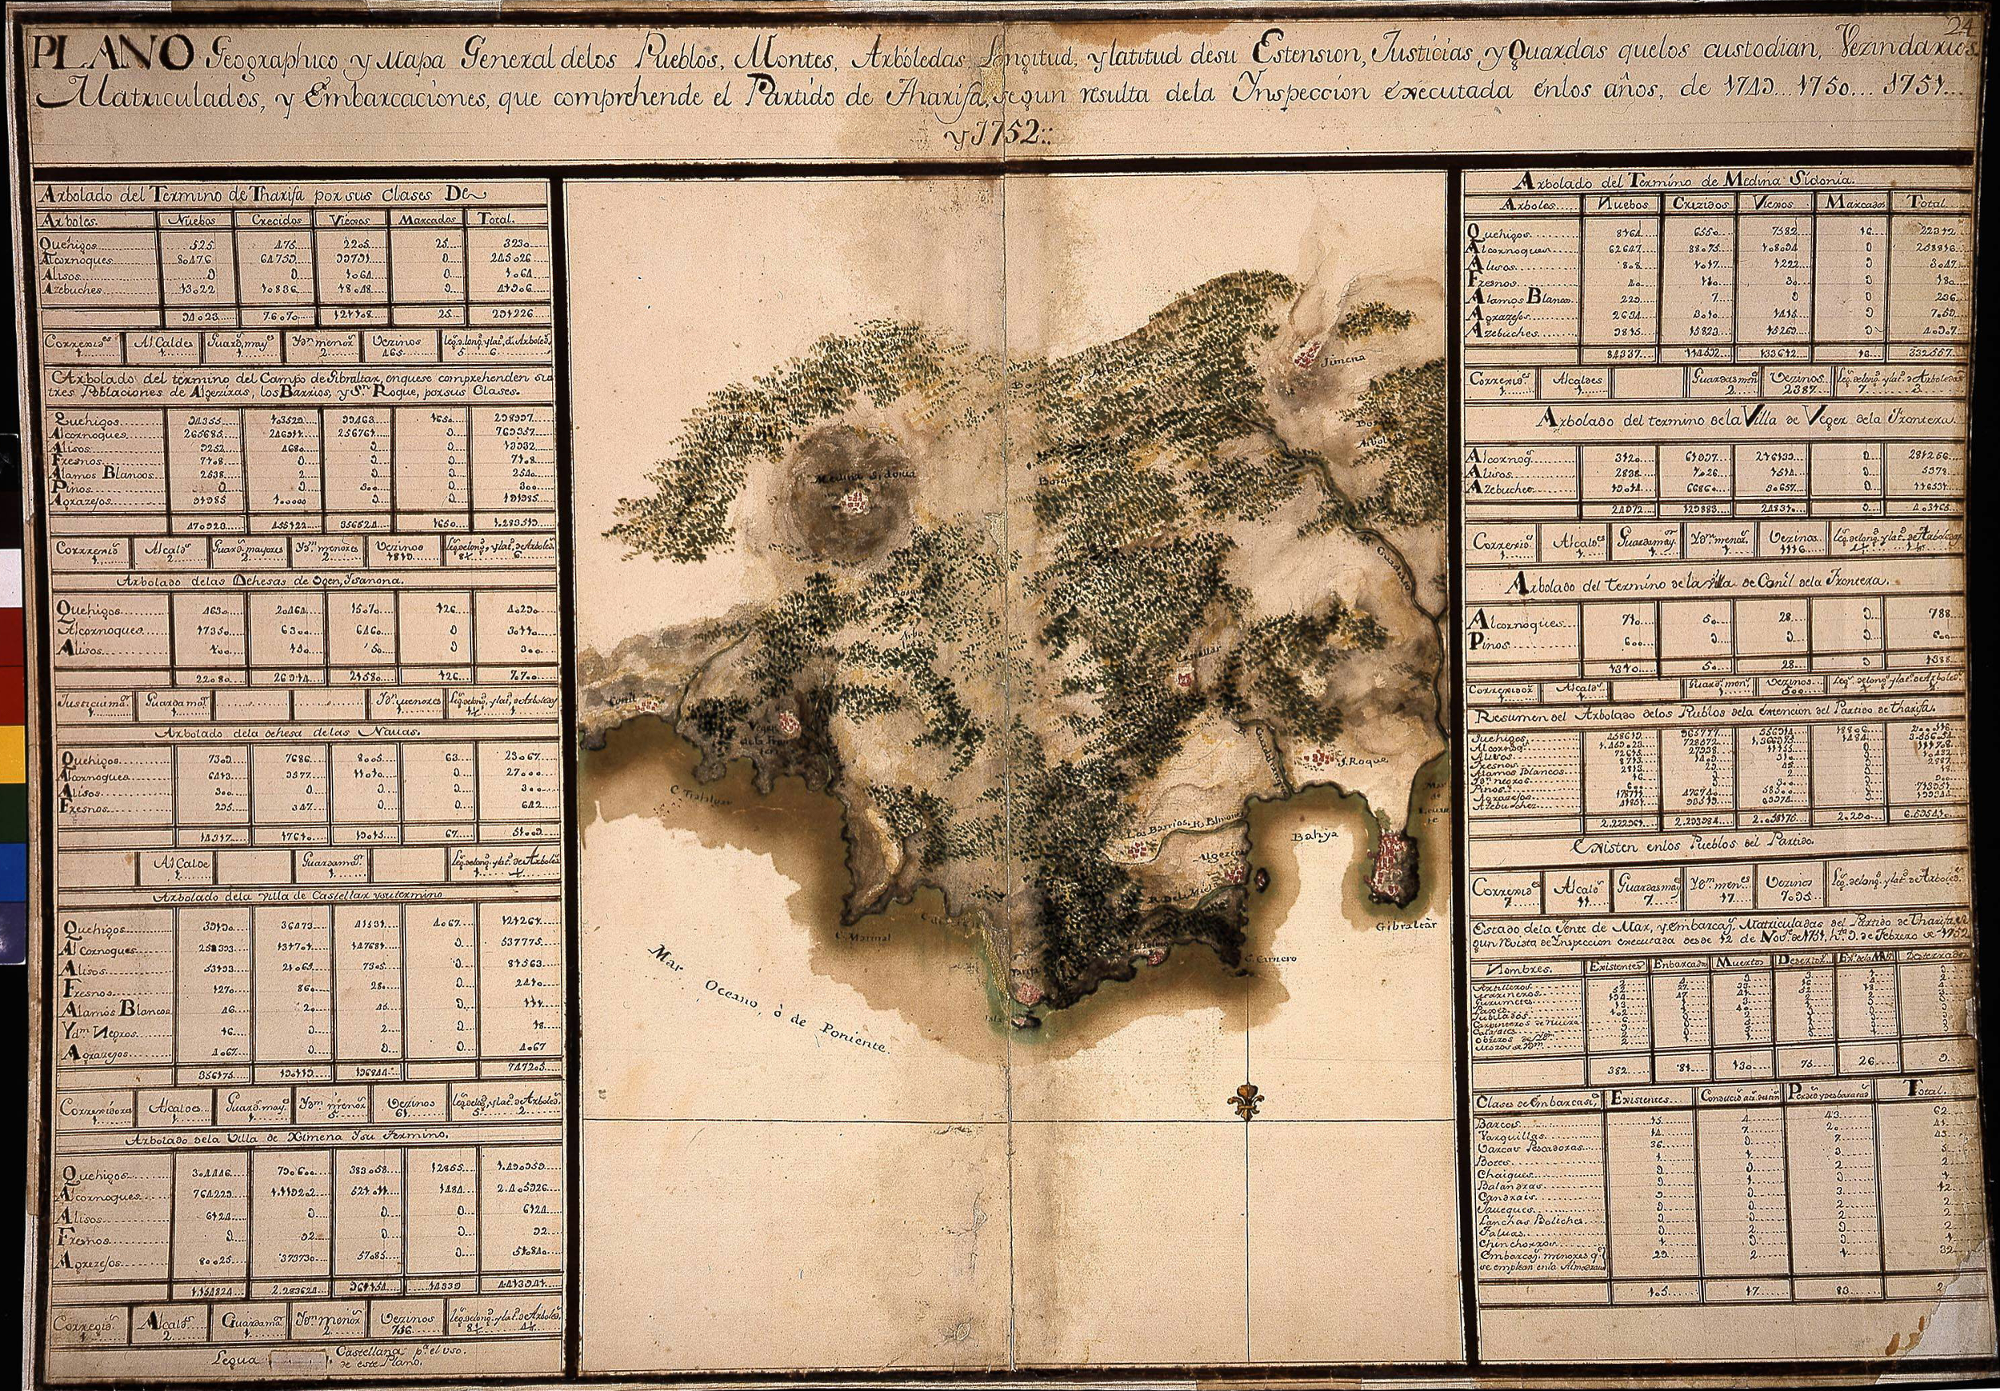 CADIZ MERIDIONAL (Provincia). Mapas generales. 1:538000. 1749 (1756)